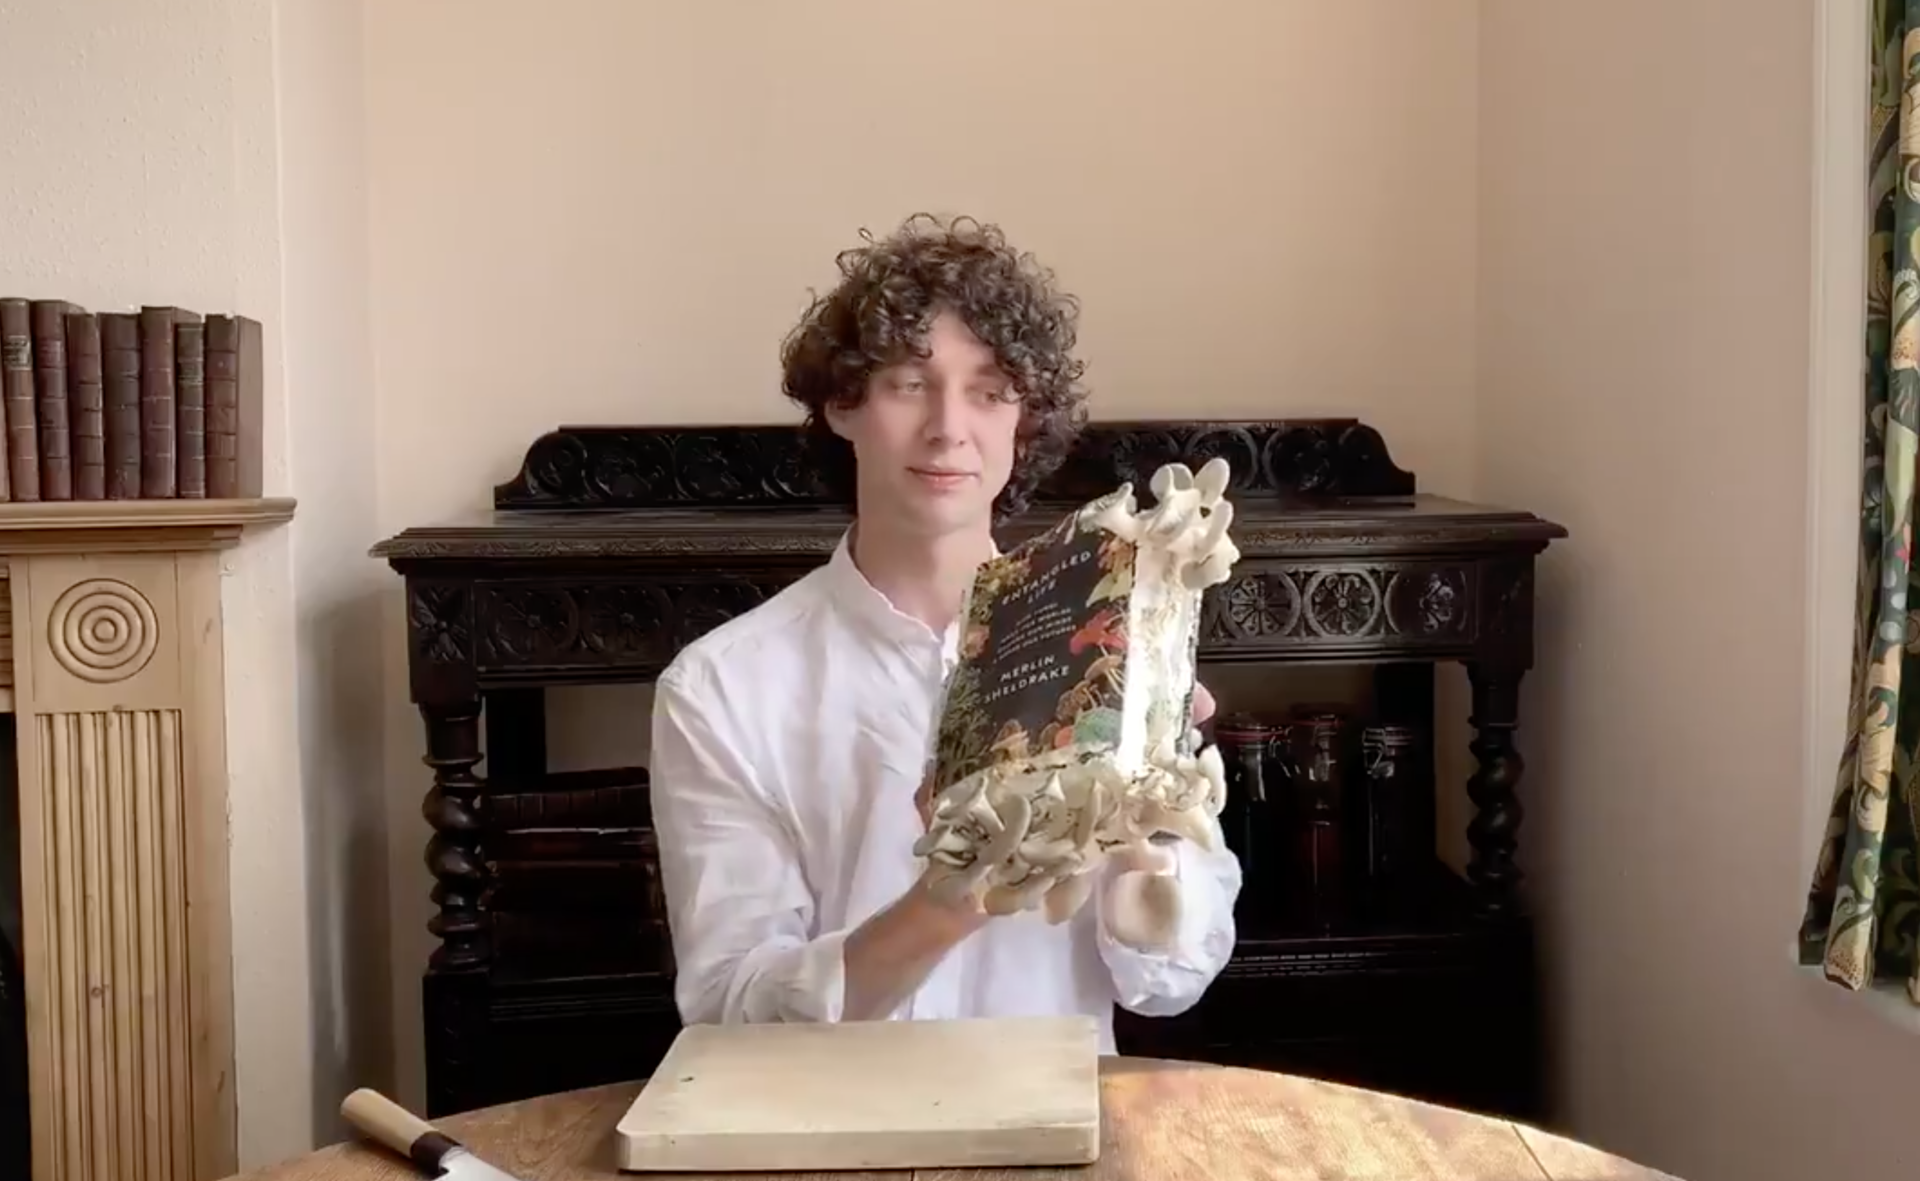 菌類の本の著者、キノコに自分の著書を食べさせそのキノコを食べる